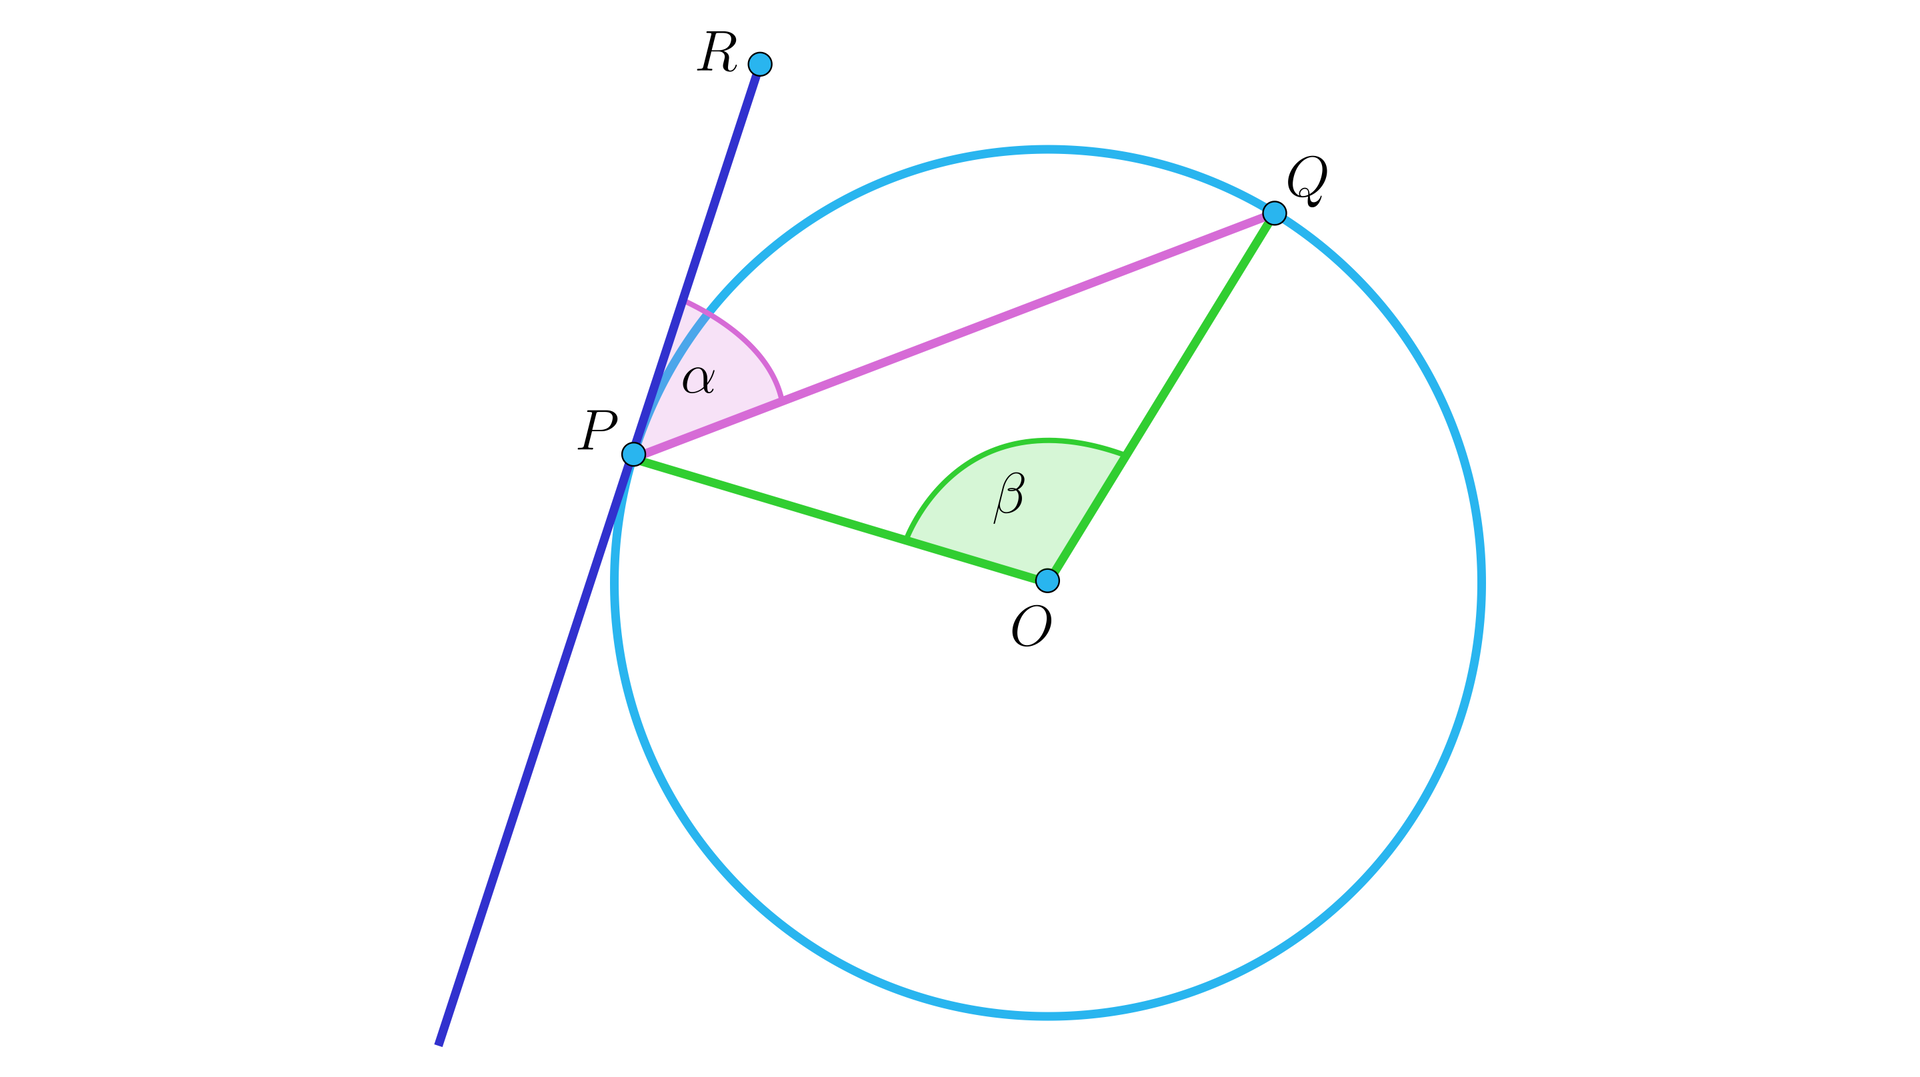 Ilustracja przedstawia okrąg o środku w punkcie O z poprowadzoną cięciwą P Q krótszą od średnicy okręgu. Ze środka poprowadzono dwa promienie: O P oraz O Q. Zaznaczono kąt rozwarty P O Q. Przez punkt P poprowadzono styczną i oznaczono kąt ostry alfa znajdujący się między prostą a cięciwą.